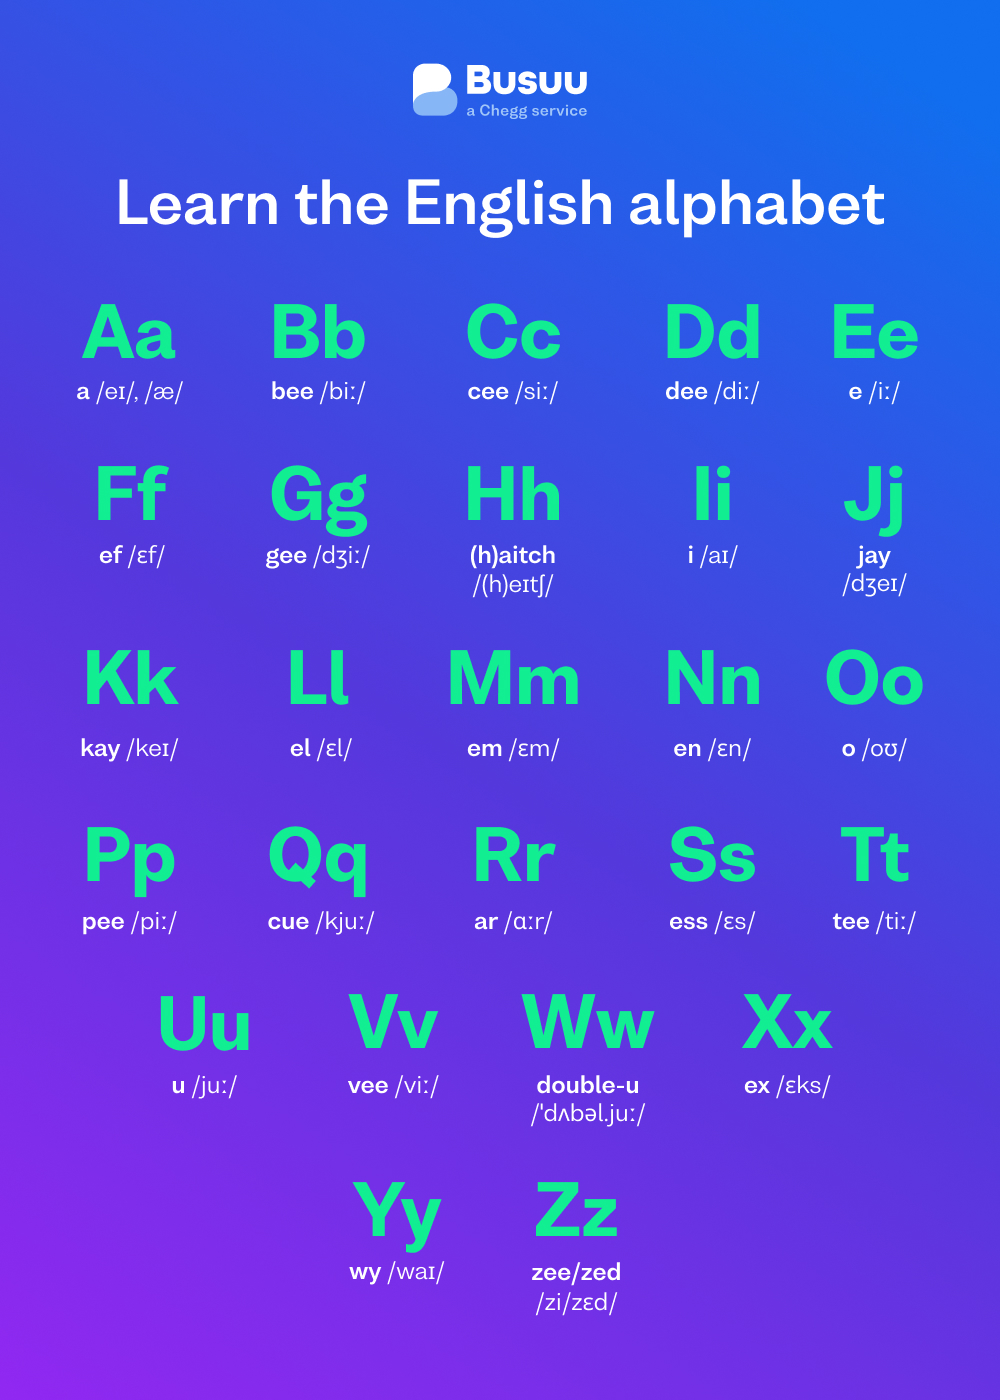 English alphabet chart, courtesy of language-learning app Busuu's English alphabet guide